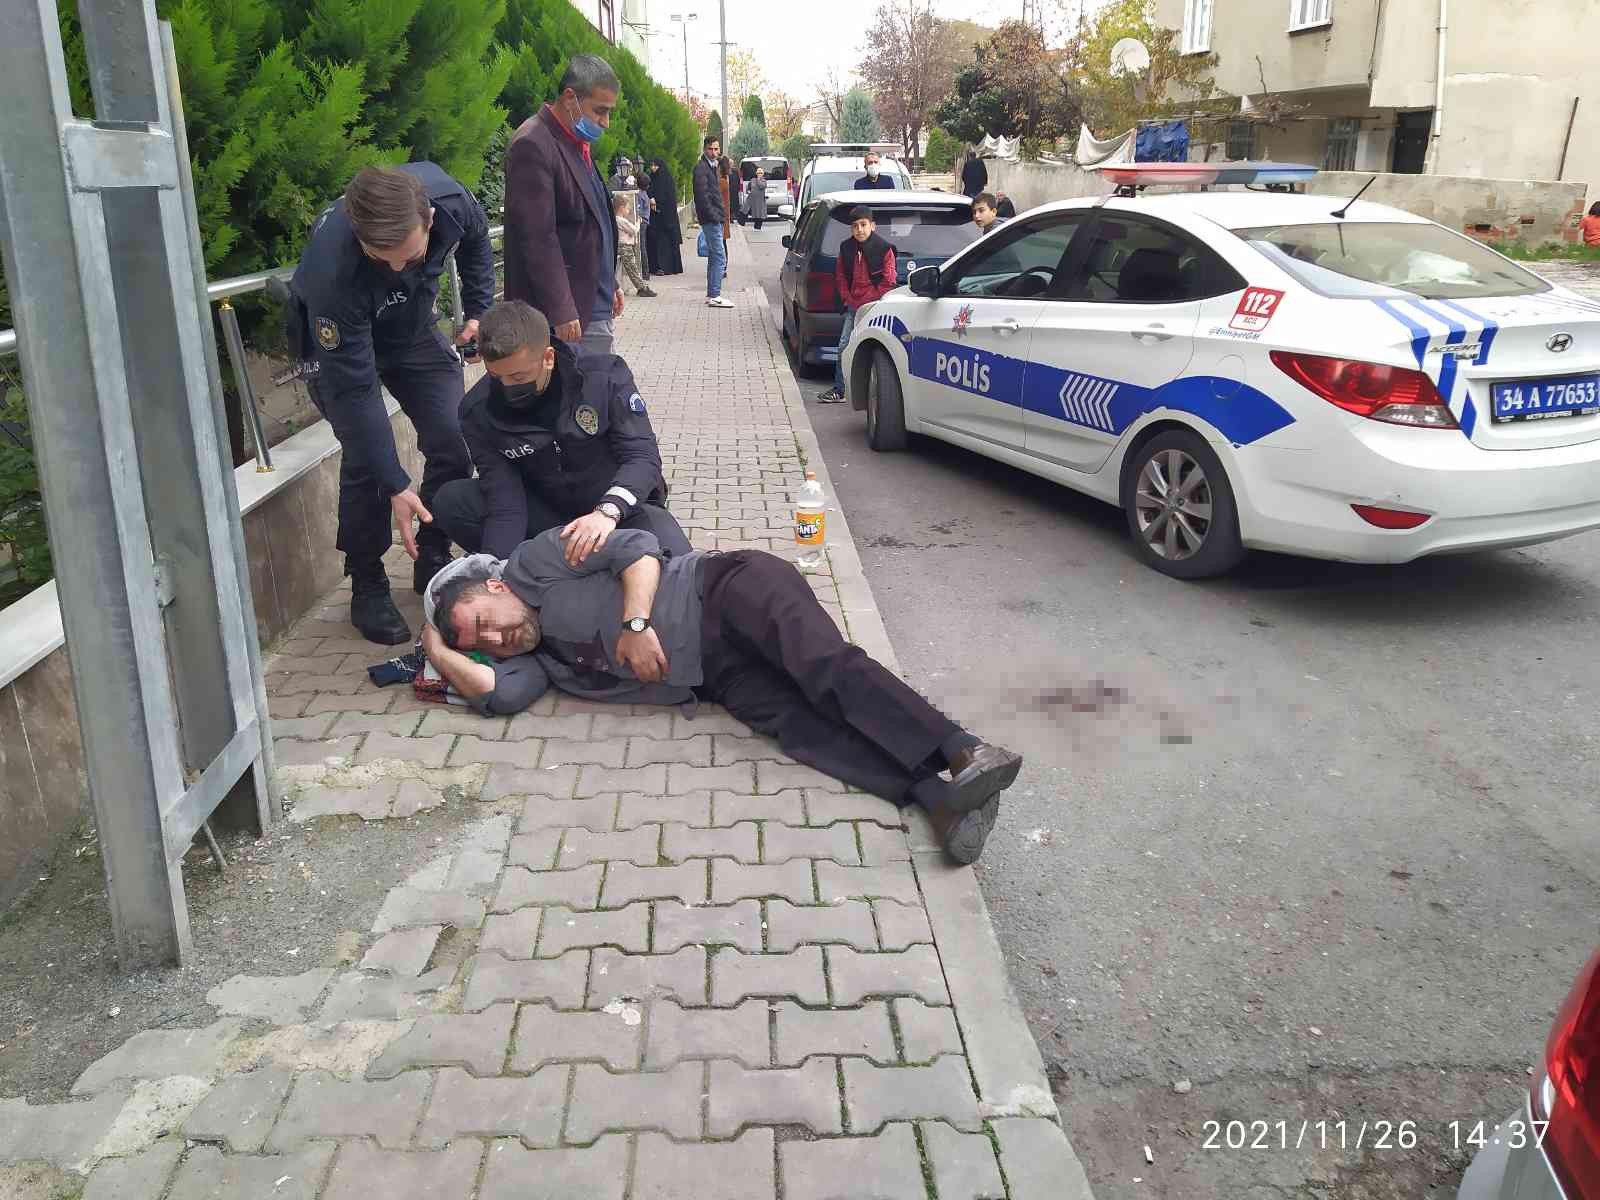 Küçükçekmece’de büyü yaptı iddiasıyla adamı beyzbol sopası ile dövdüler #istanbul